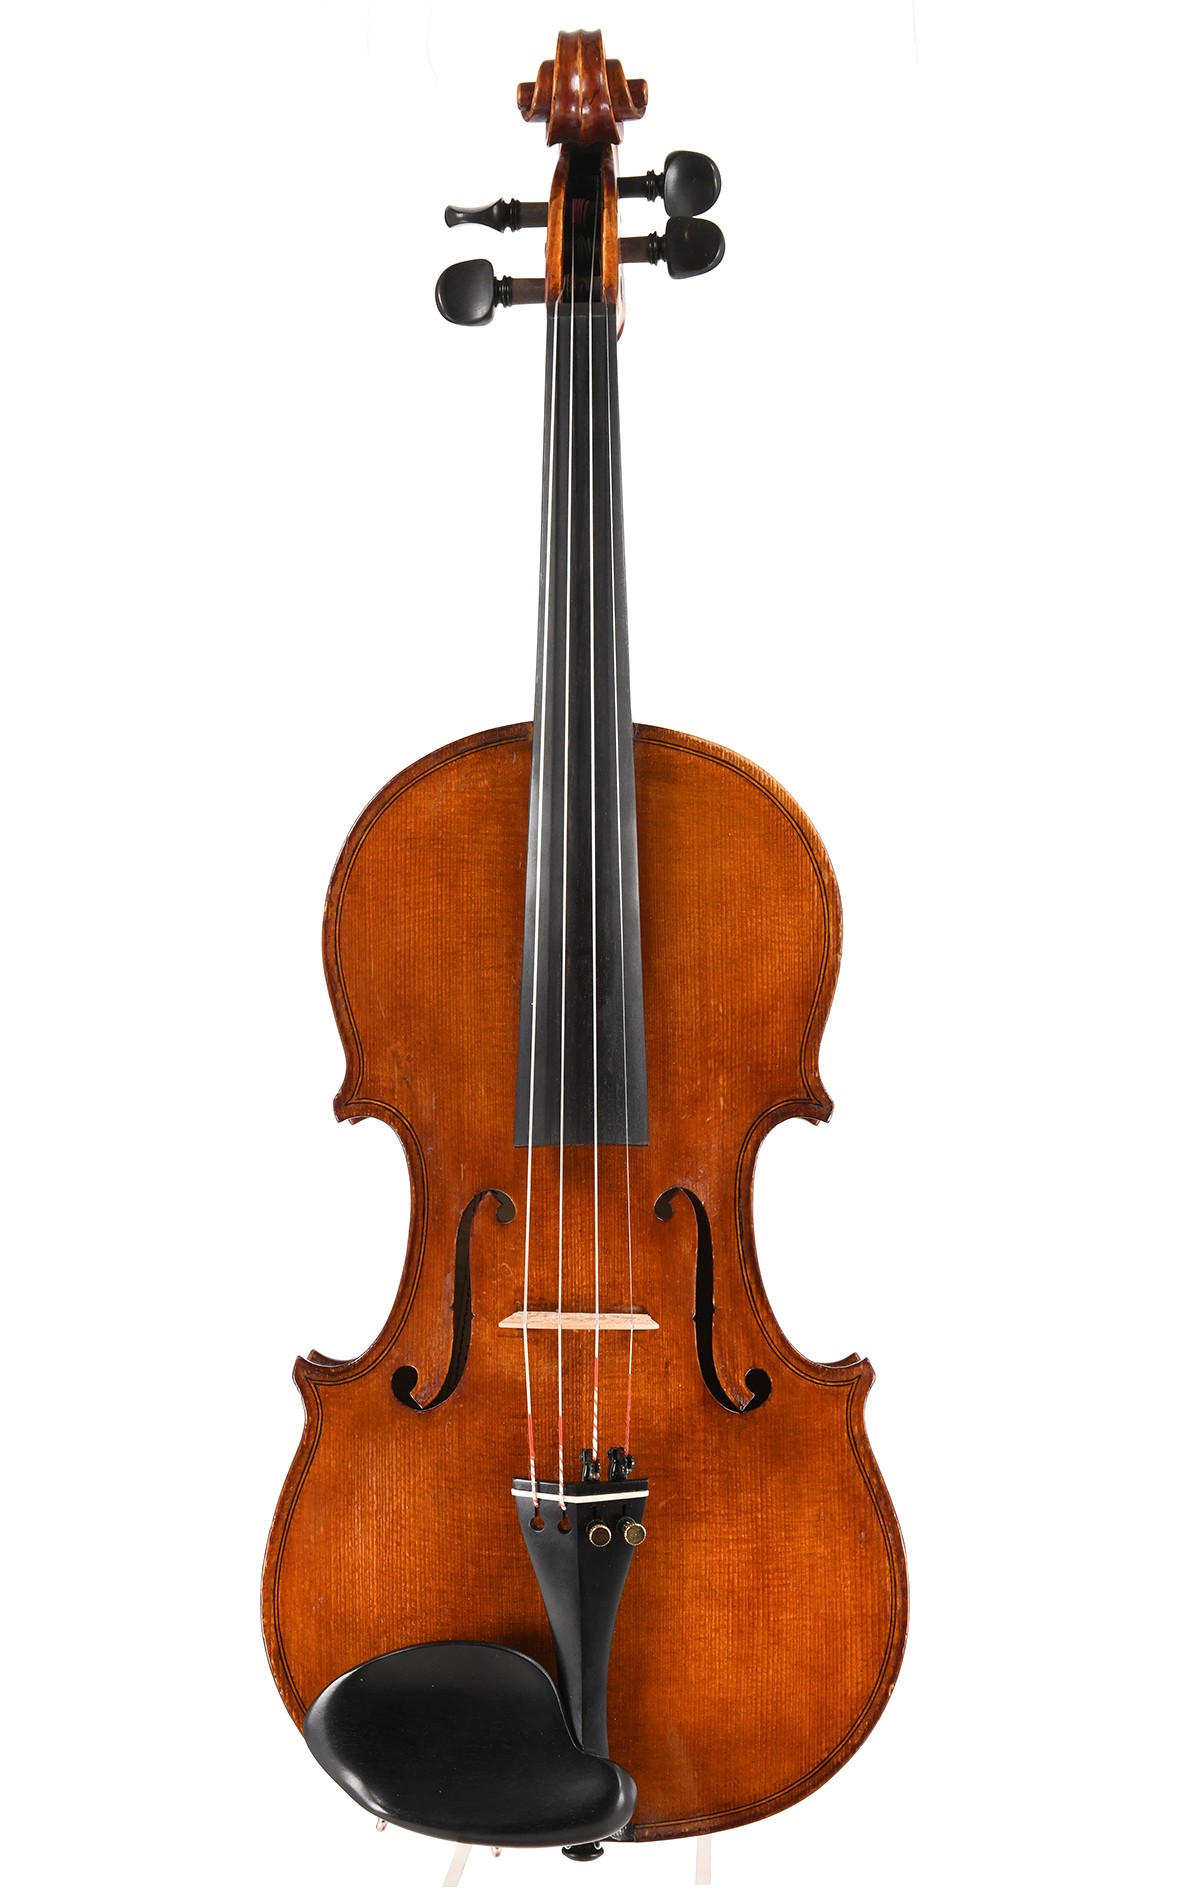 Benito Tosello violin